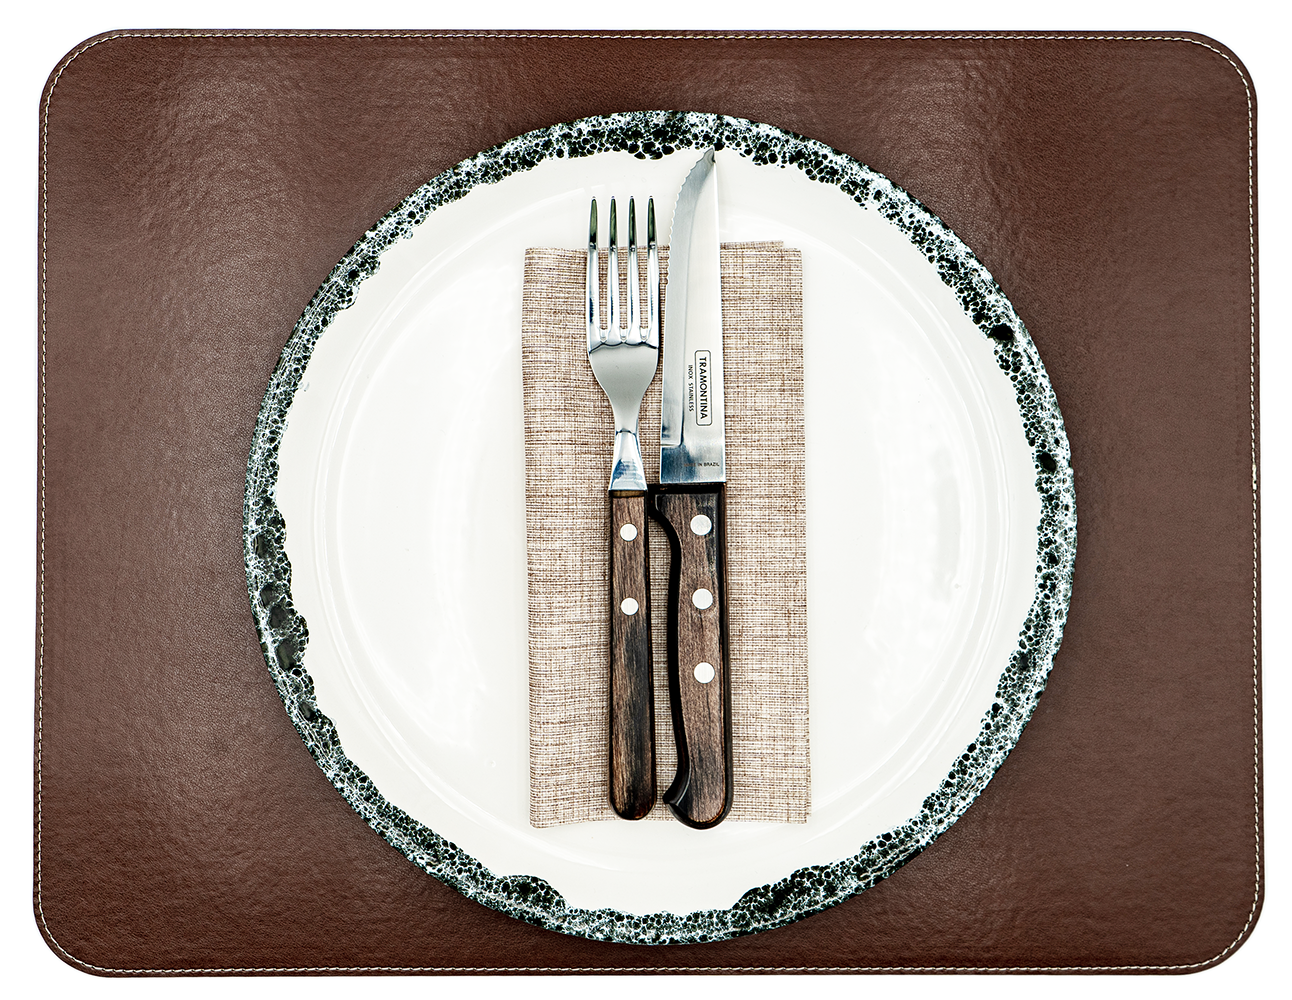 1 Tischset aus veganem PU Kunstleder - doppelseitig - 44 x 34 cm - Schwarz / Kastanie